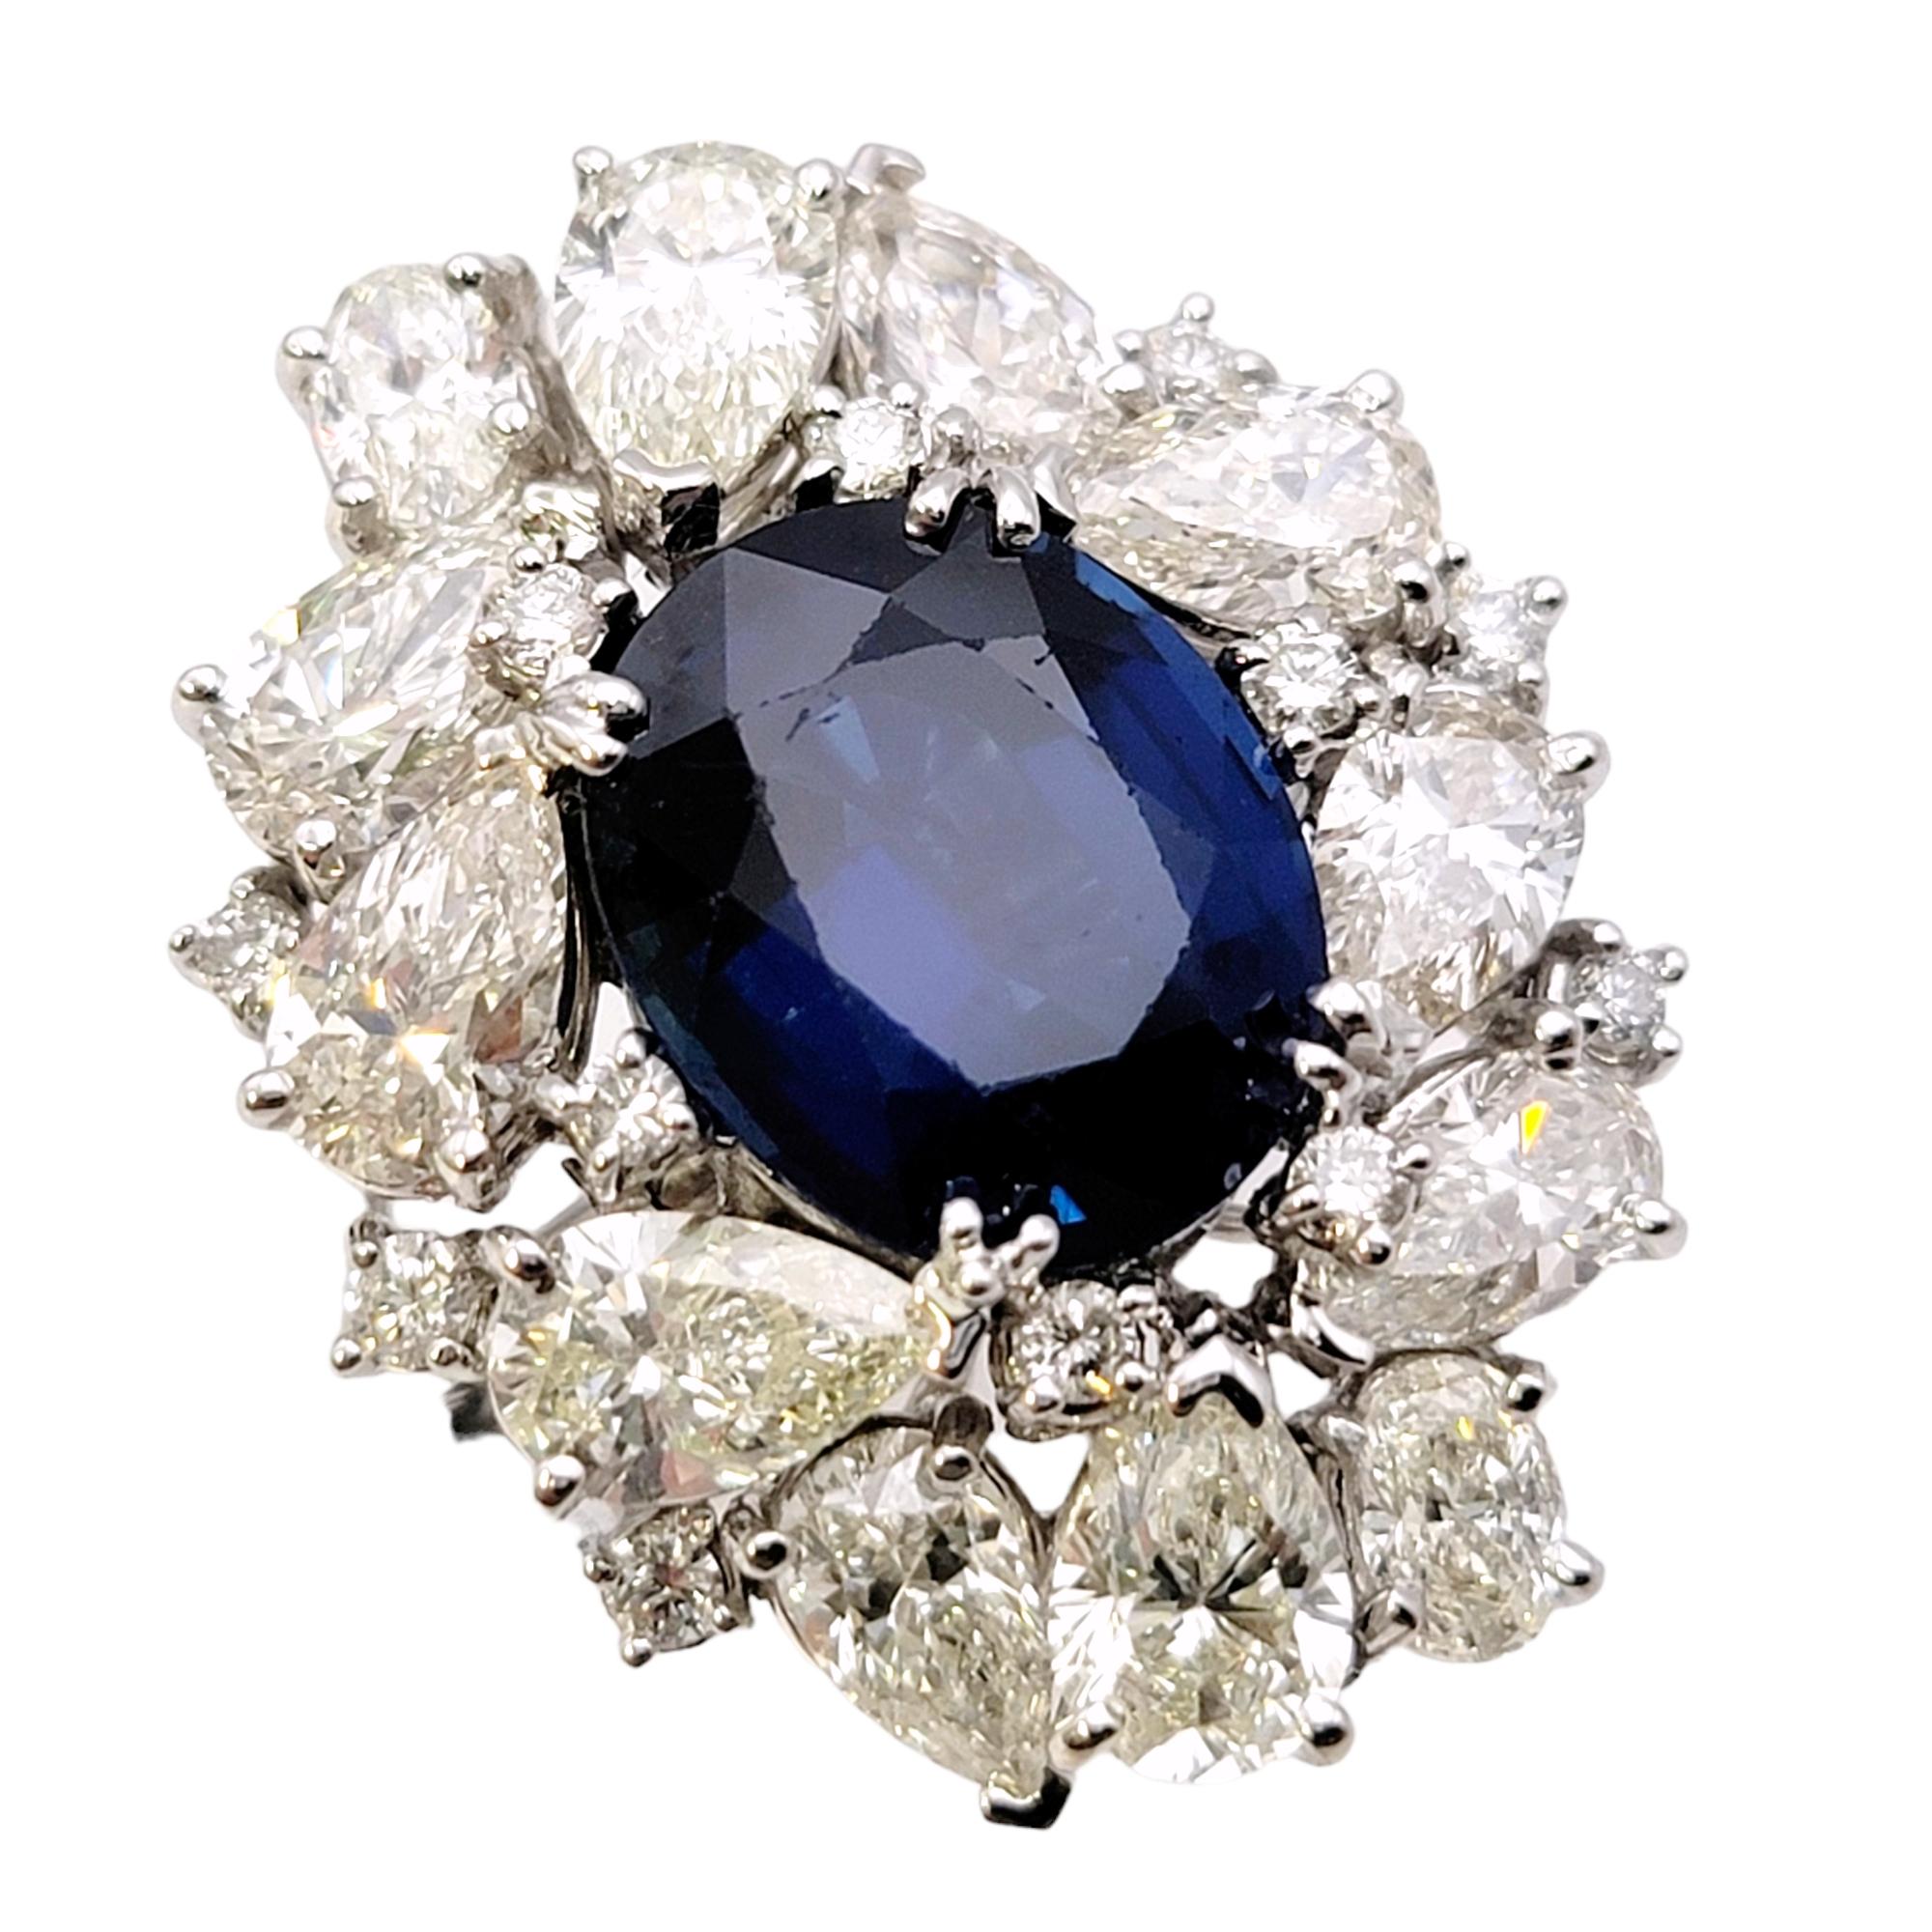 Taille de l'anneau : 6.5

Bague en saphir et diamant absolument époustouflante. La pierre bleue brillante sertie de diamants d'un blanc éclatant attire vraiment l'attention. Nous aimons l'originalité et la beauté des diamants en grappe de formes